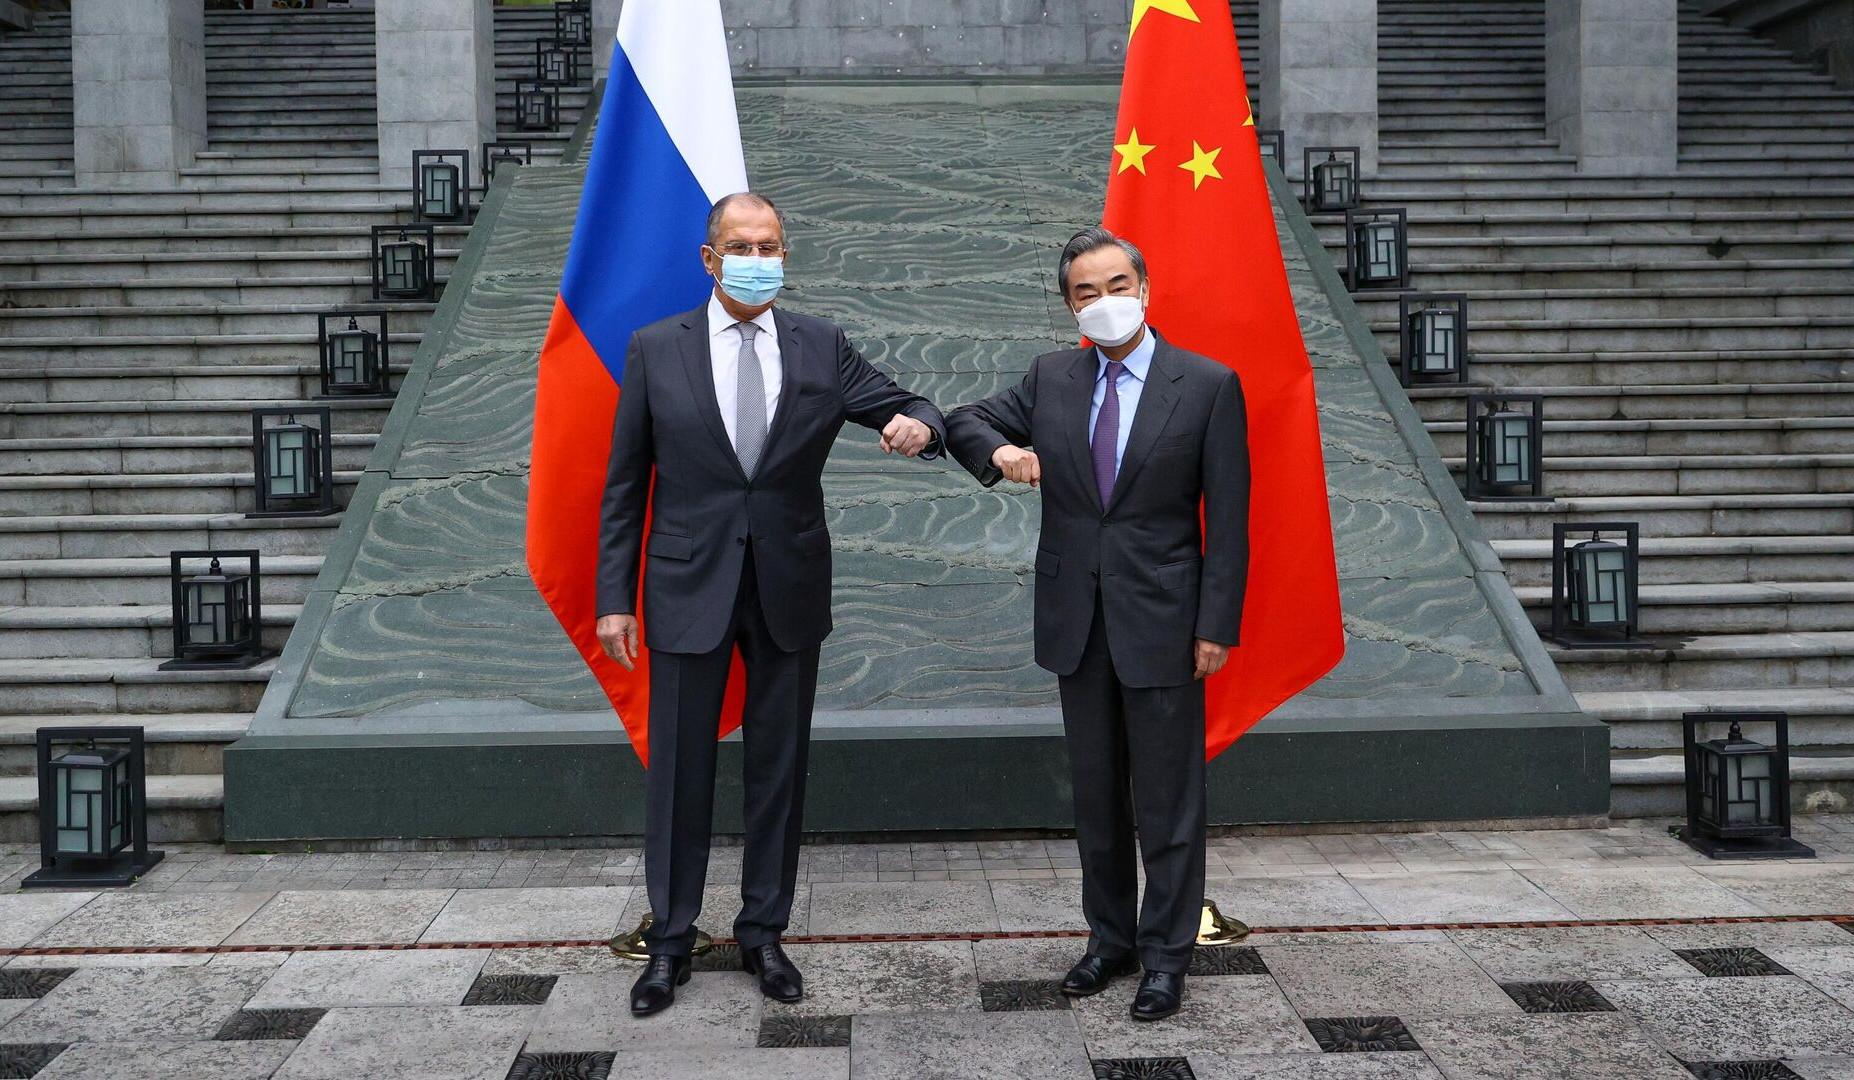 Ռուսաստանի և Չինաստանի ԱԳ նախարարներն անթույլատրելի են համարել Արևմուտքի միակողմանի պատժամիջոցները